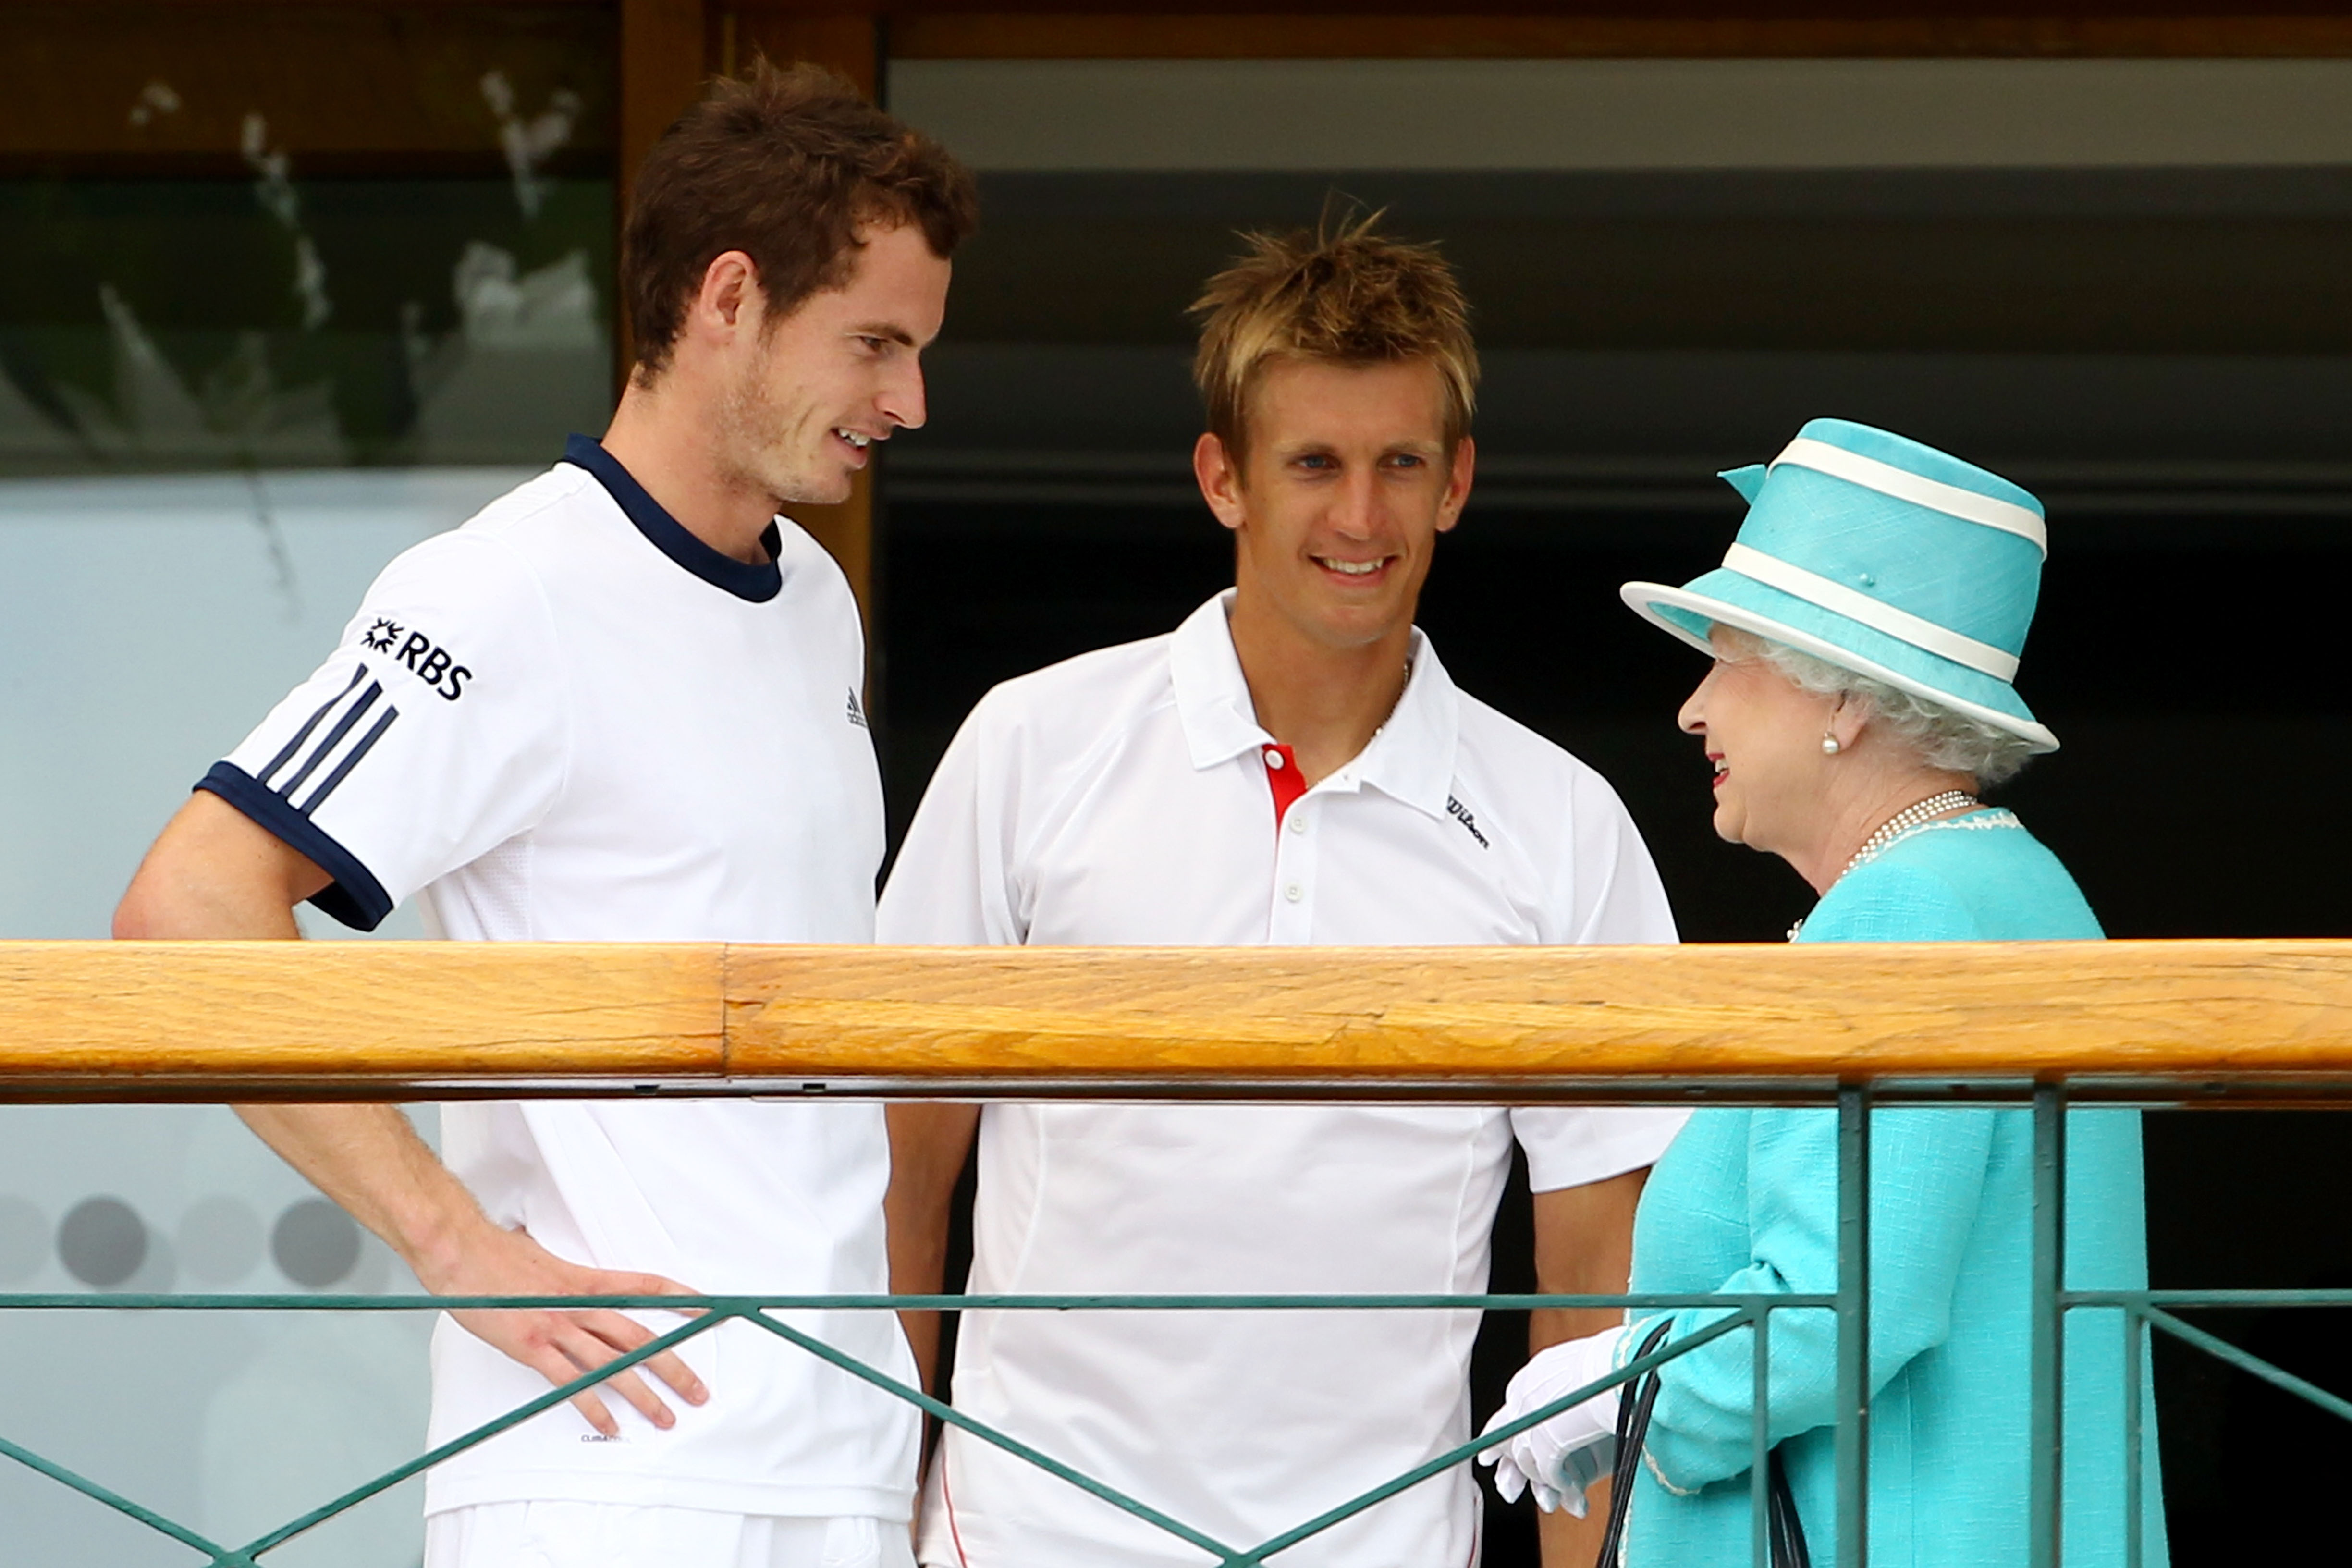 La reina dialoga con el tenista Andy Murray en una de las pocas veces que usó el Palco Real de Wimbledon (Julian Finney/Getty Images)